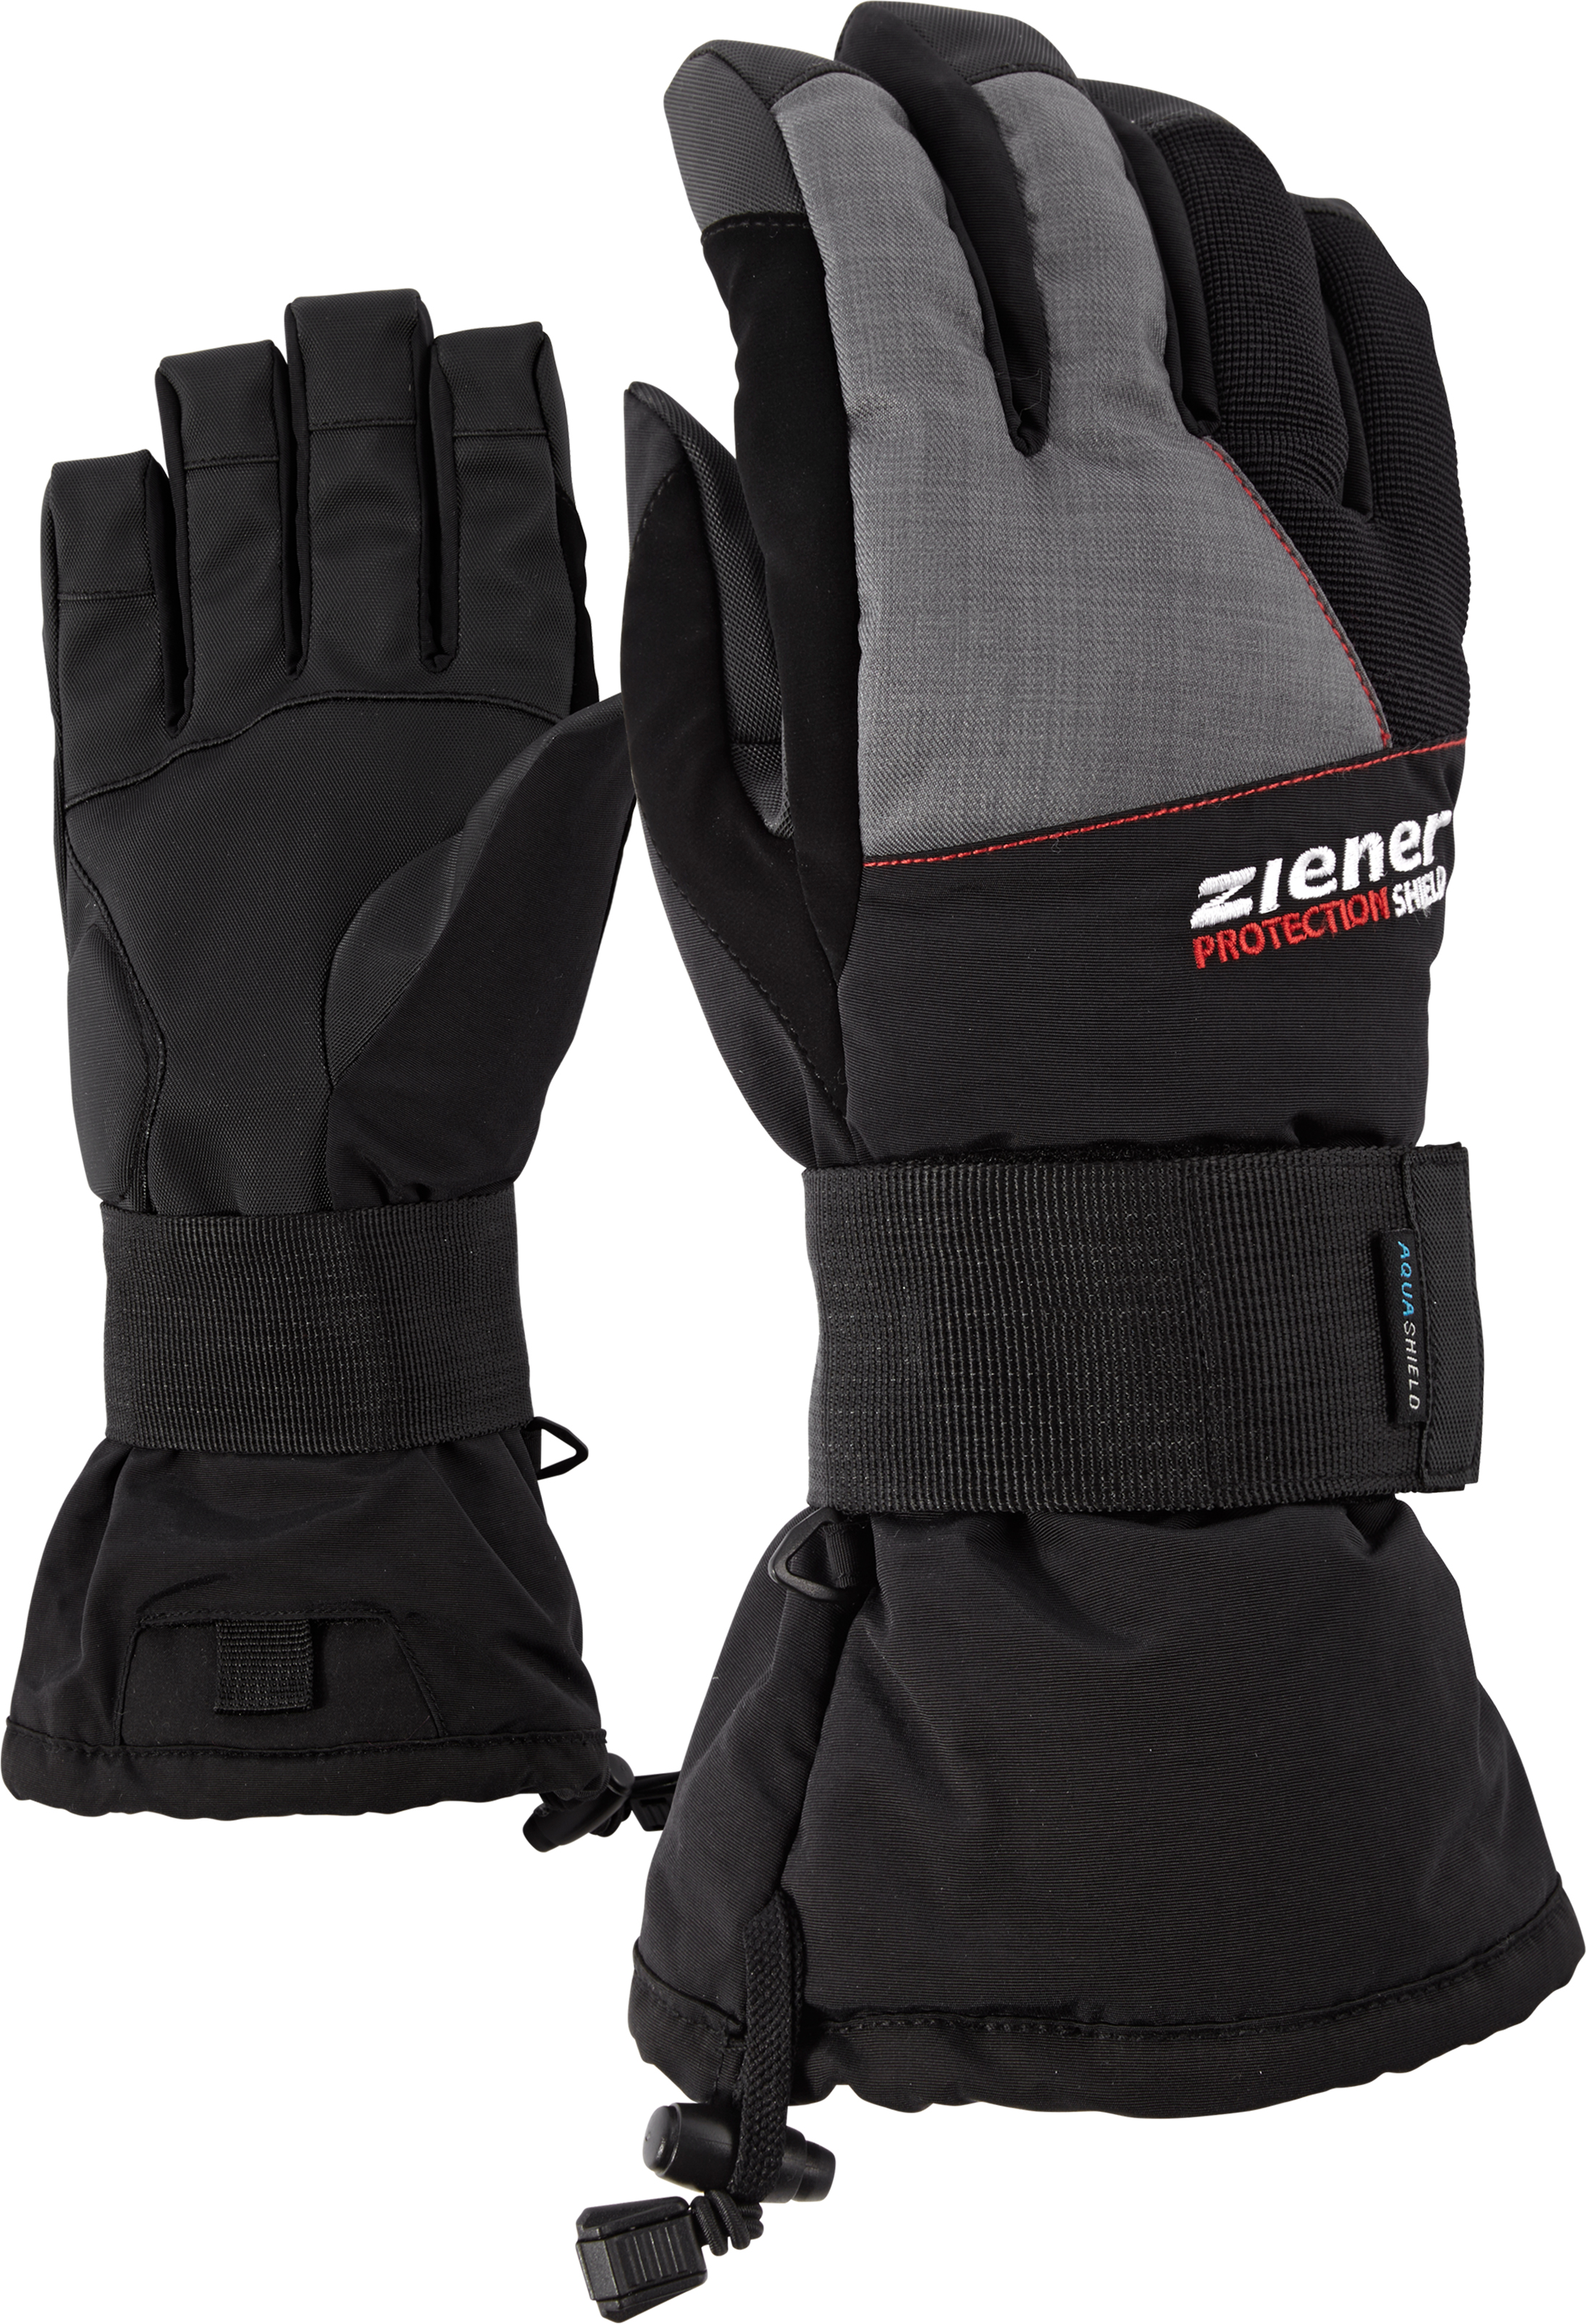 MERFOS AS(R) glove SB | Wolf Intersport